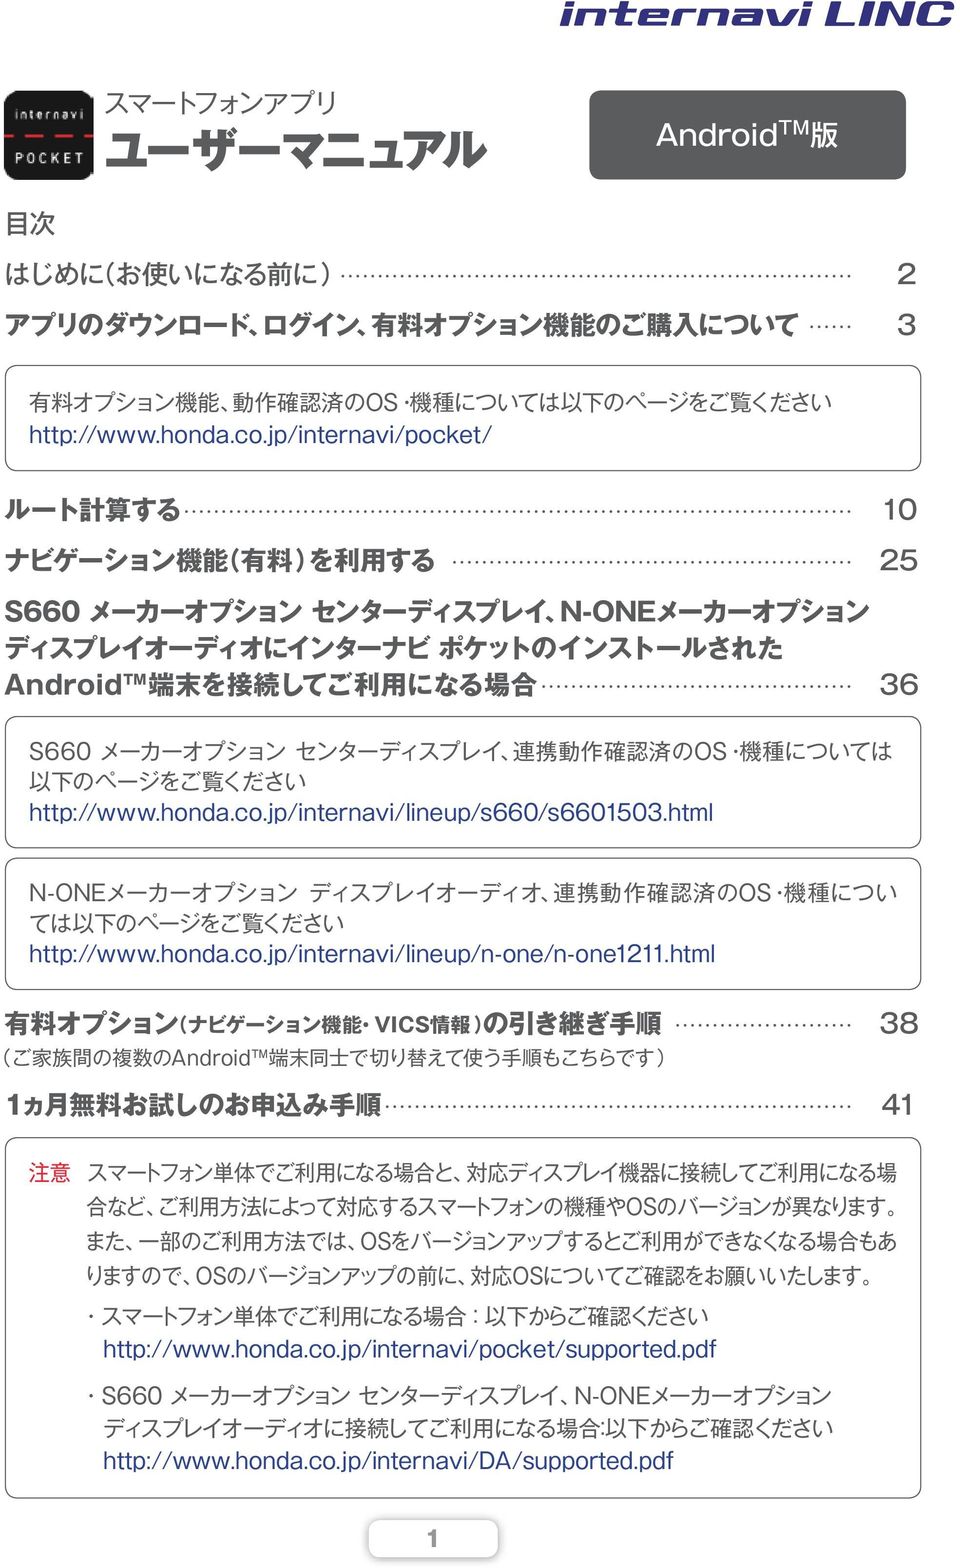 センターディスプレイ 連 携 動 作 確 認 済 のOS 機 種 については 以 下 のページをご 覧 ください http://www.honda.co.jp/internavi/lineup/s660/s6601503.